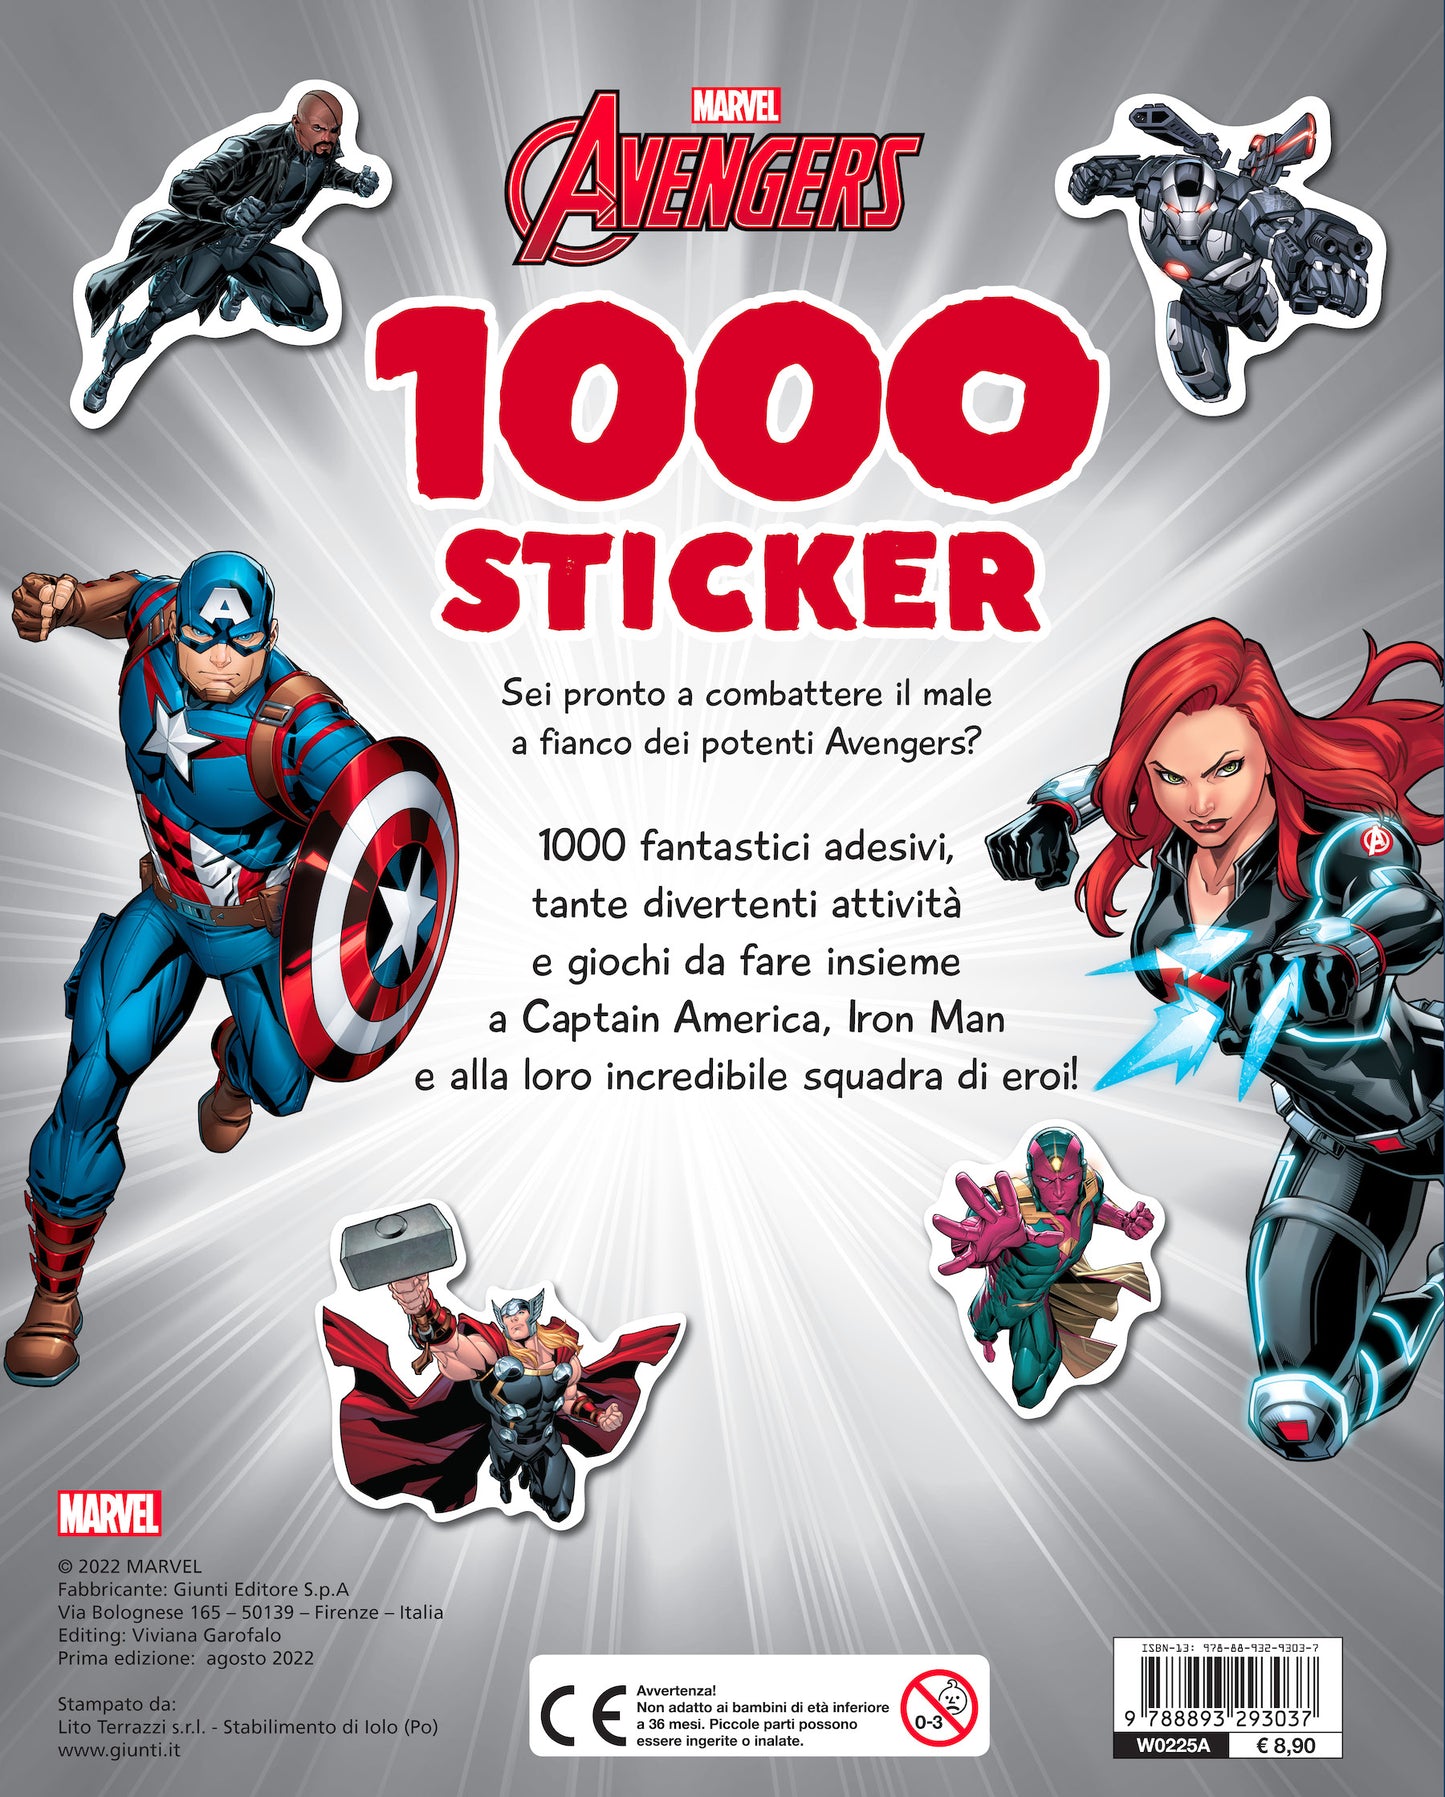 1000 Sticker Marvel Avengers::Tanti giochi e attività